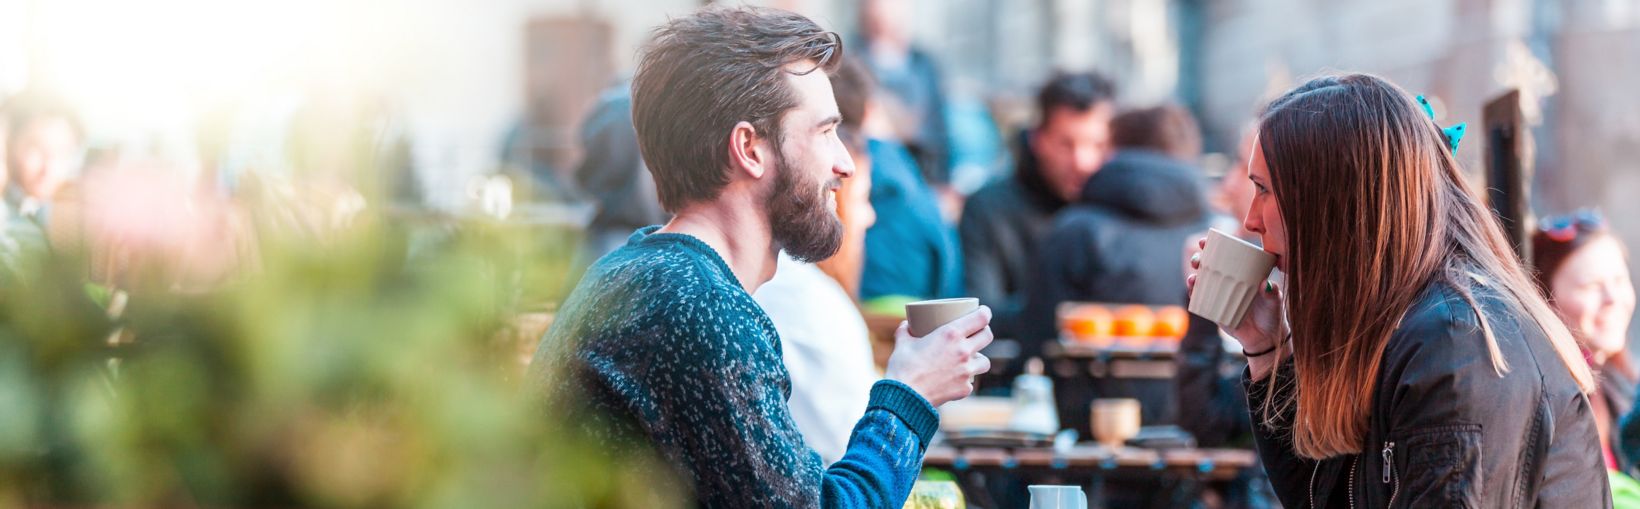 Eine junge Frau mit langen braunen Haaren trinkt mit ihrem männlichen Freund an einem hellen, aber kühlen Tag Kaffee an einem Tisch außerhalb des Cafés